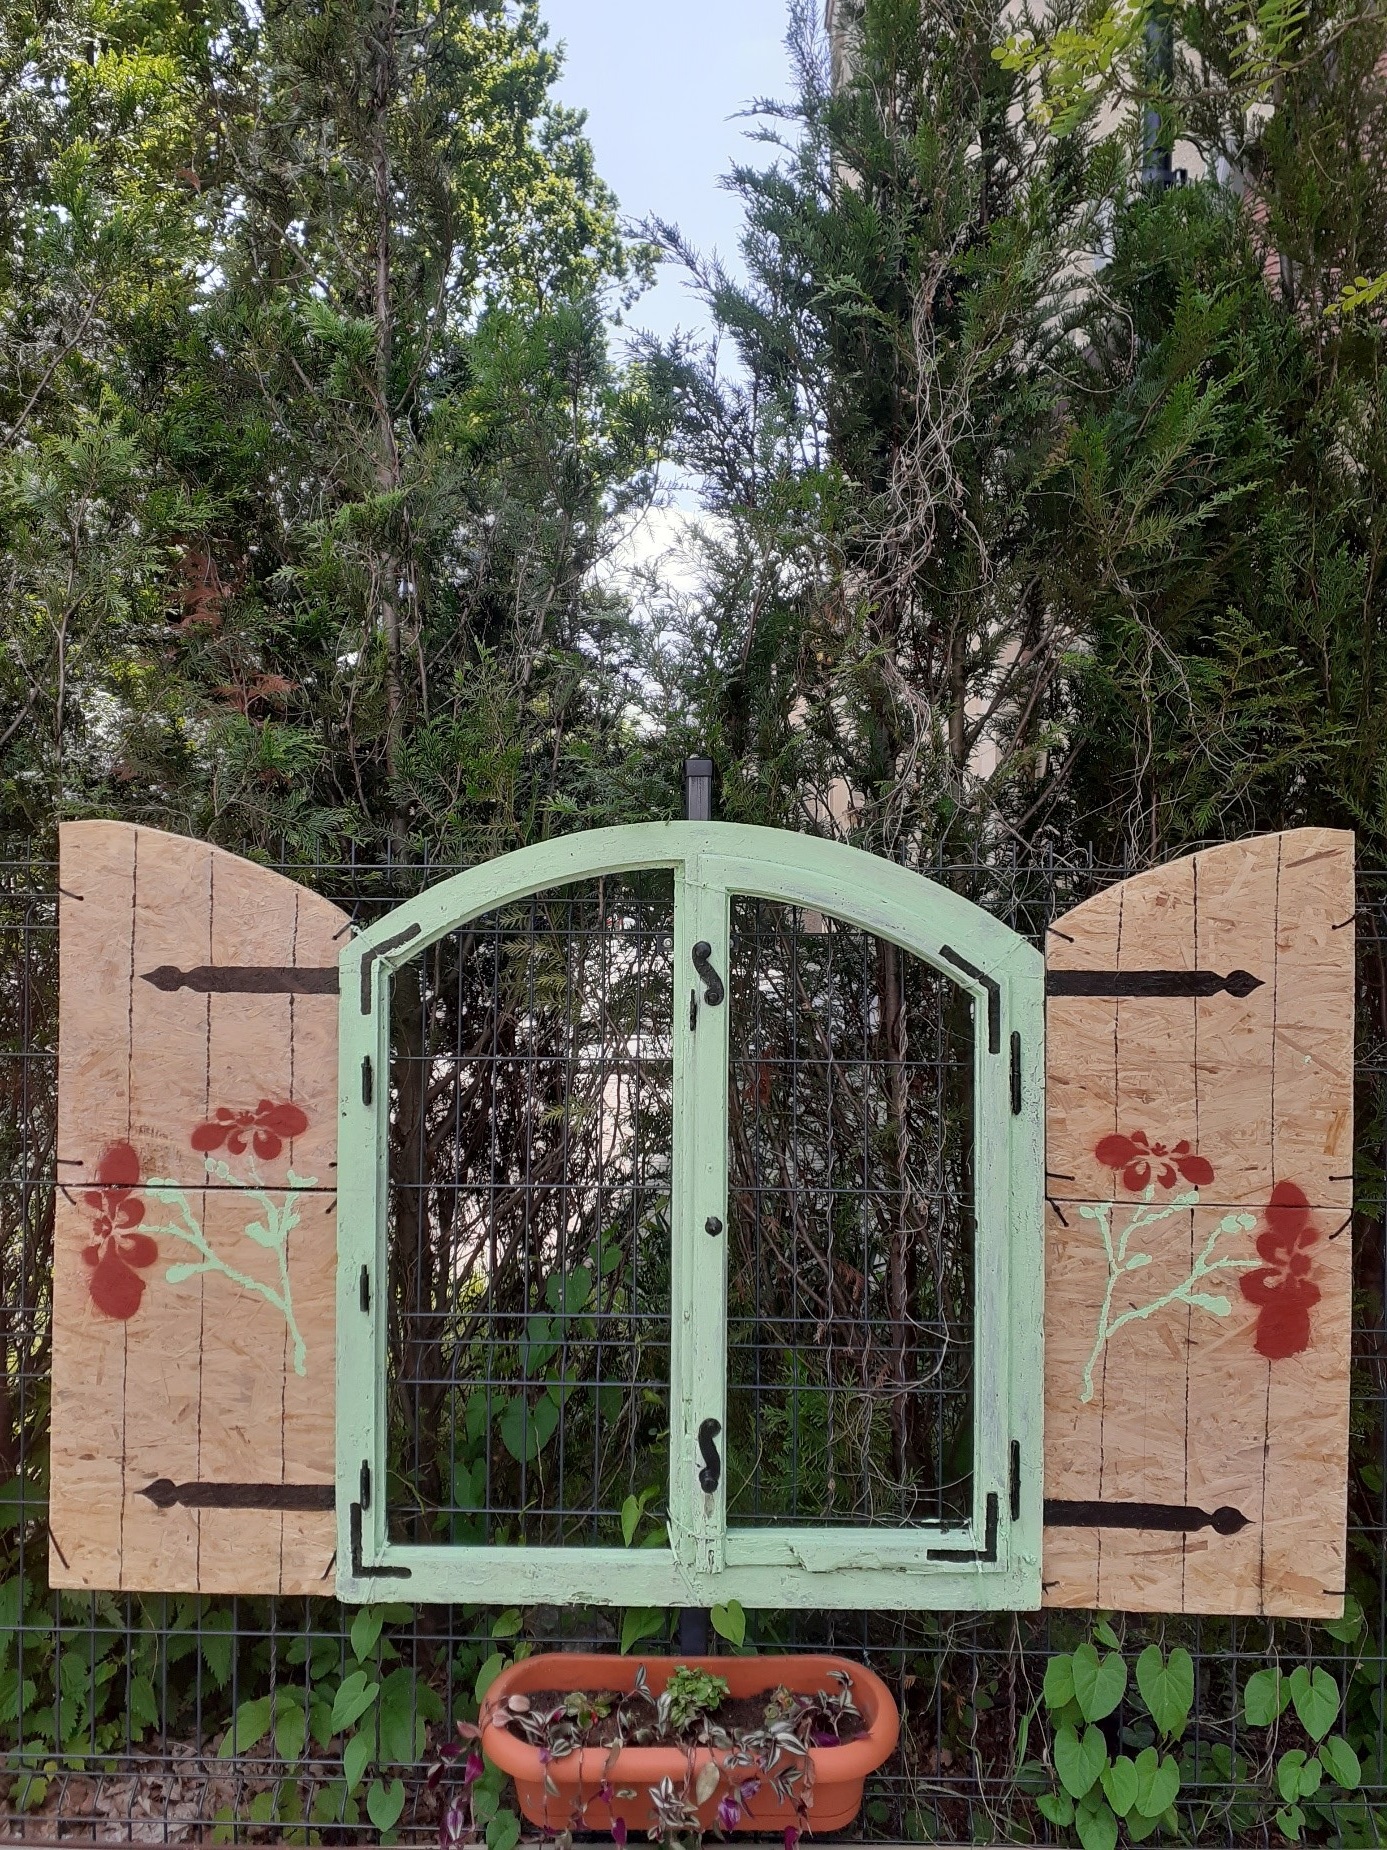 Obraz Przedstawia „Tajemnicze okno”  w ogrodzie DDP. Okno z zielonymi ramami i brązowymi okiennicami na tle drzew.